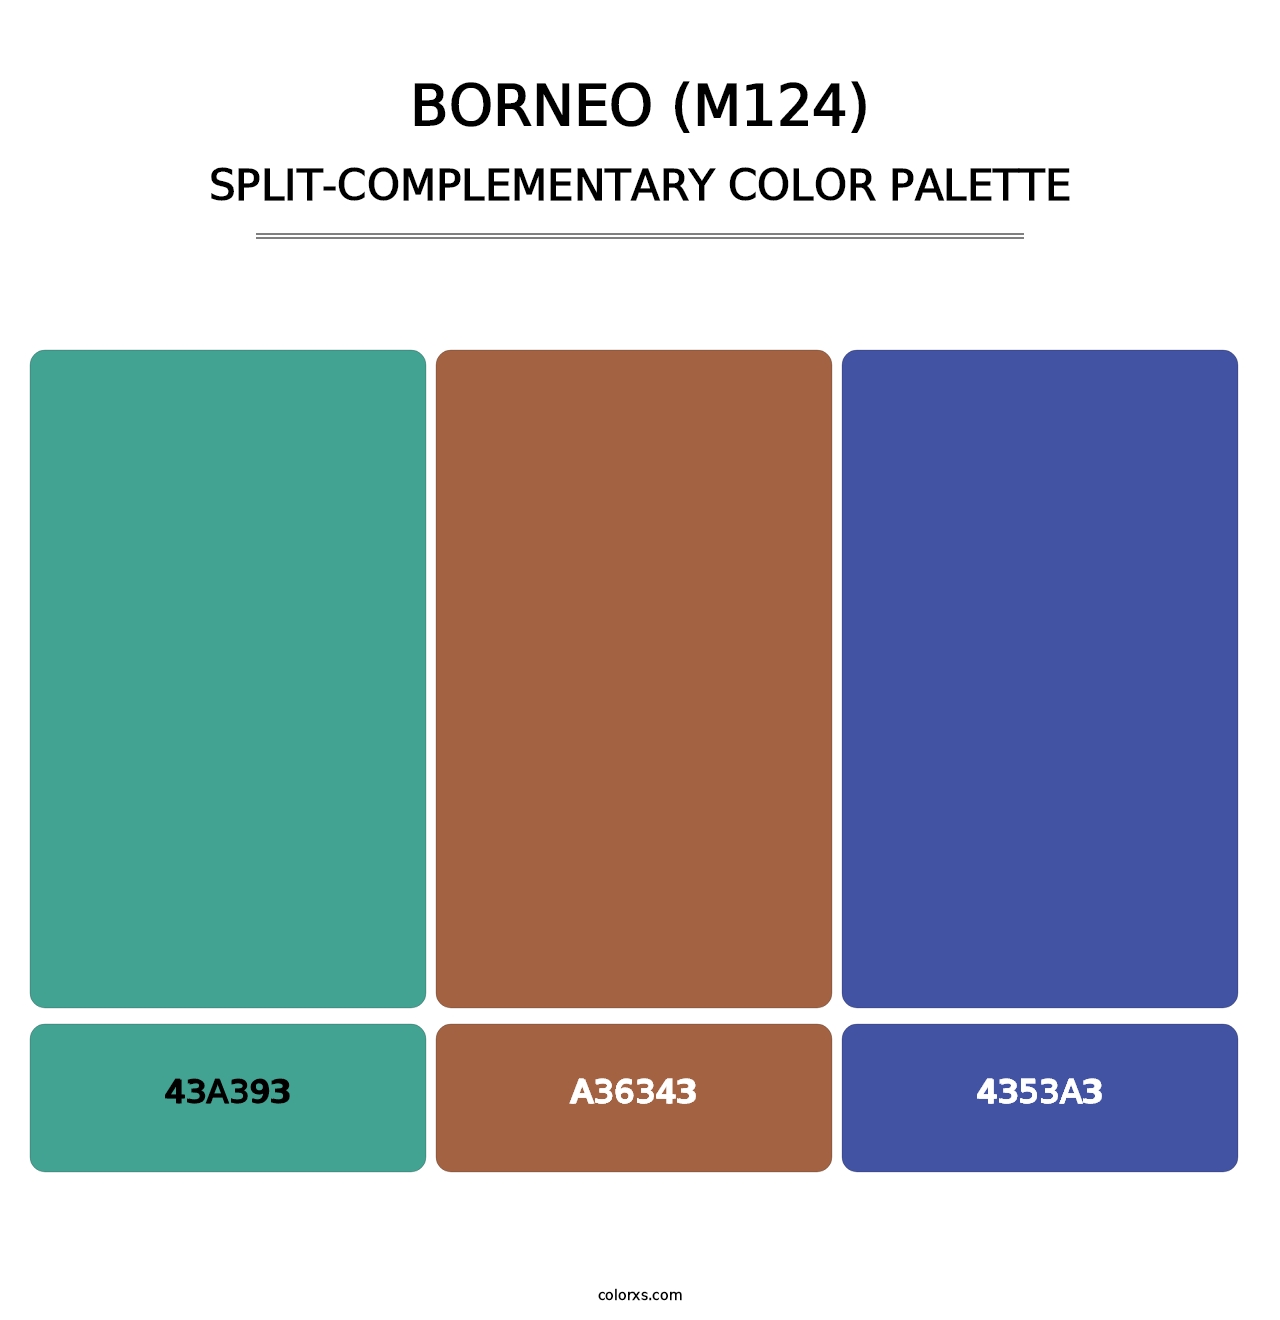 Borneo (M124) - Split-Complementary Color Palette